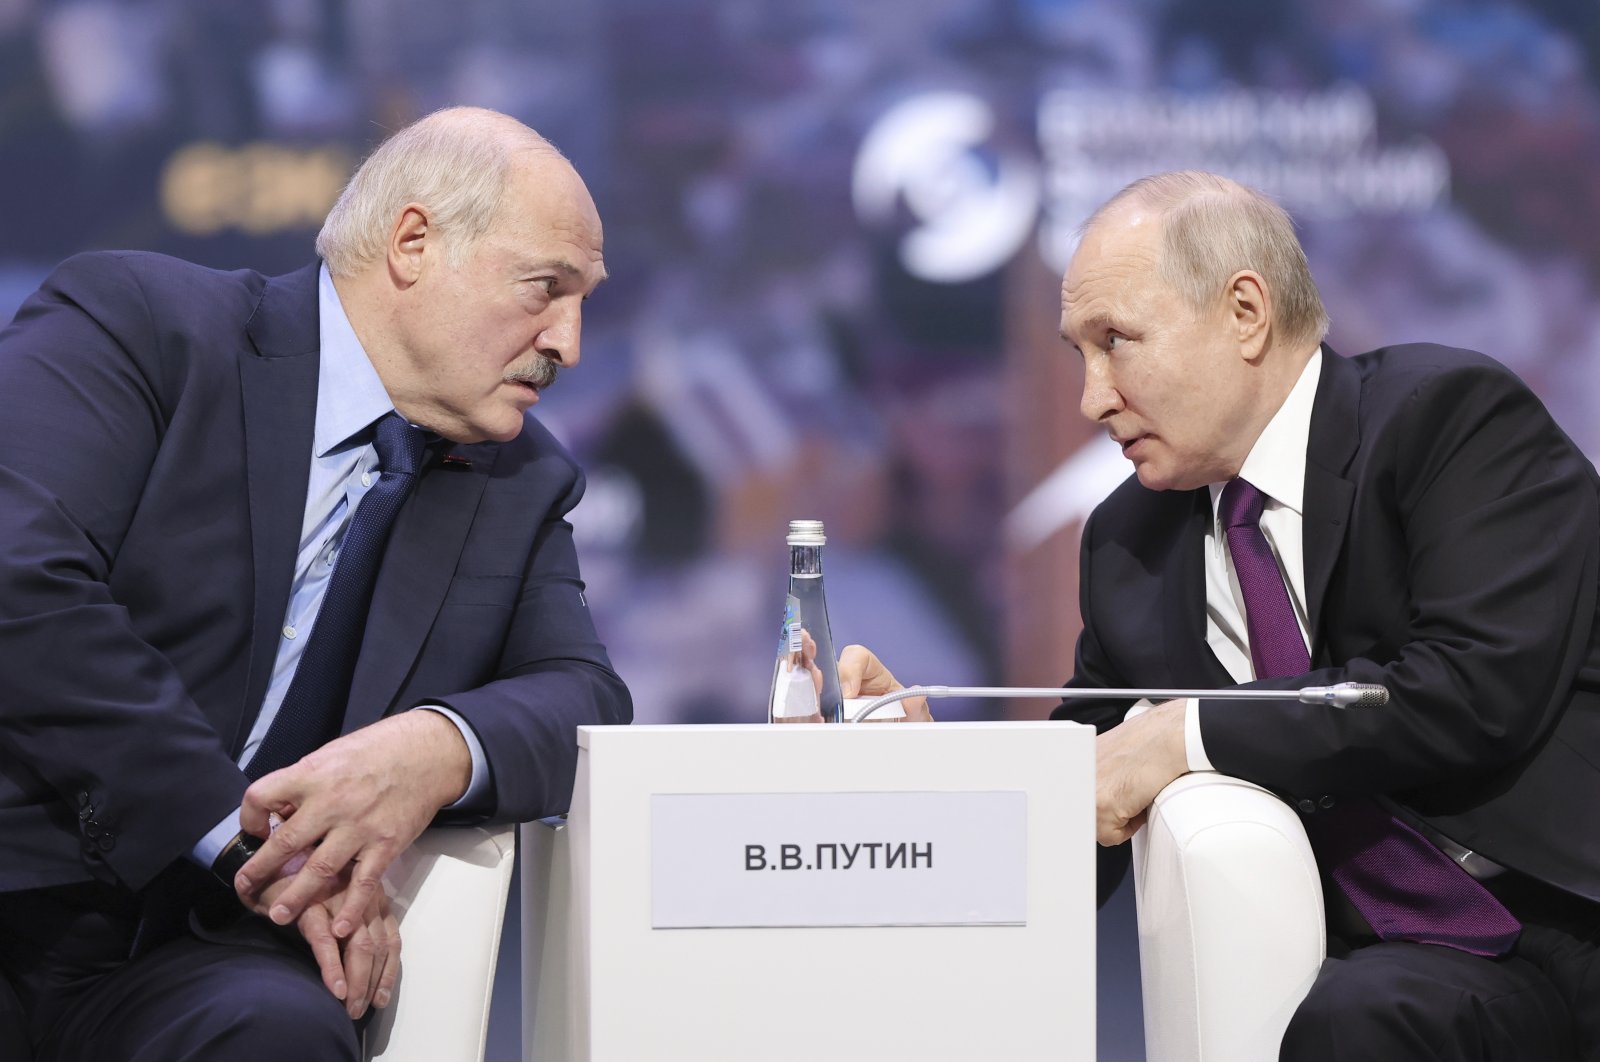 Rusia mulai menyebarkan senjata nuklir ke Belarus: Lukashenko